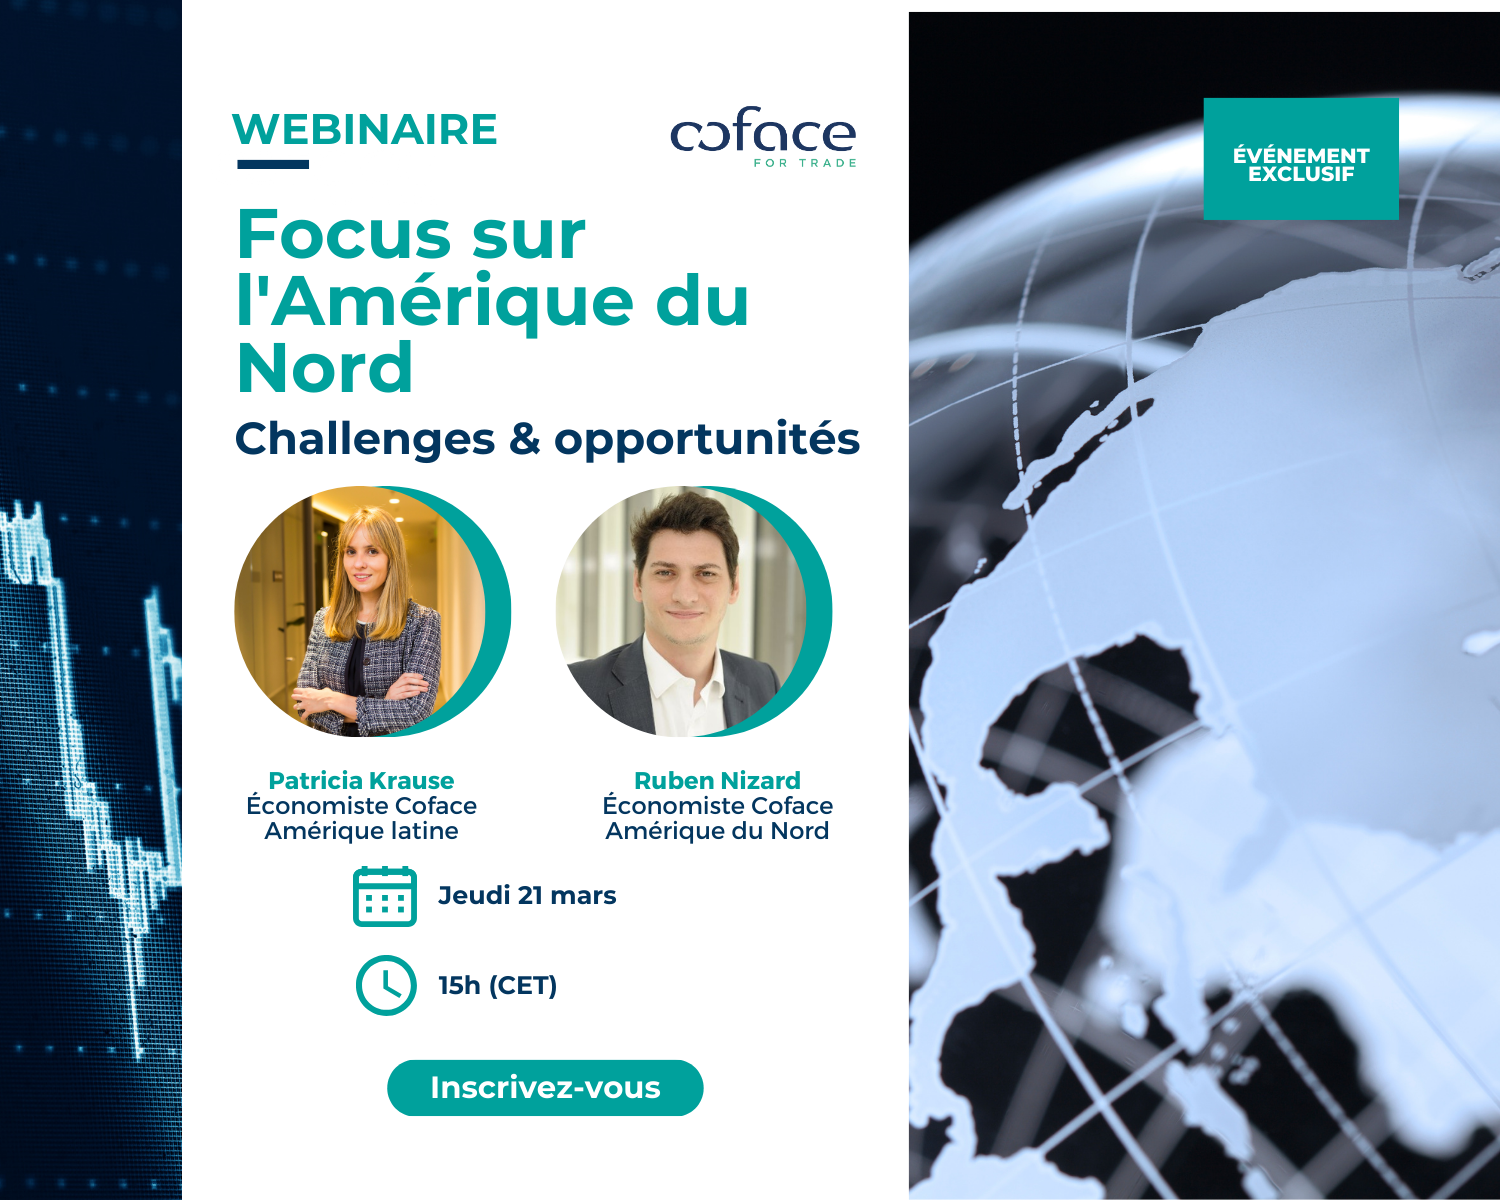 Webinaire : Focus sur l'Amérique du Nord - Challenges & opportunités. Avec la présence de Patricia Krause et Ruben Nizard, économistes Coface, le jeudi 21 mars à 15h (CET).